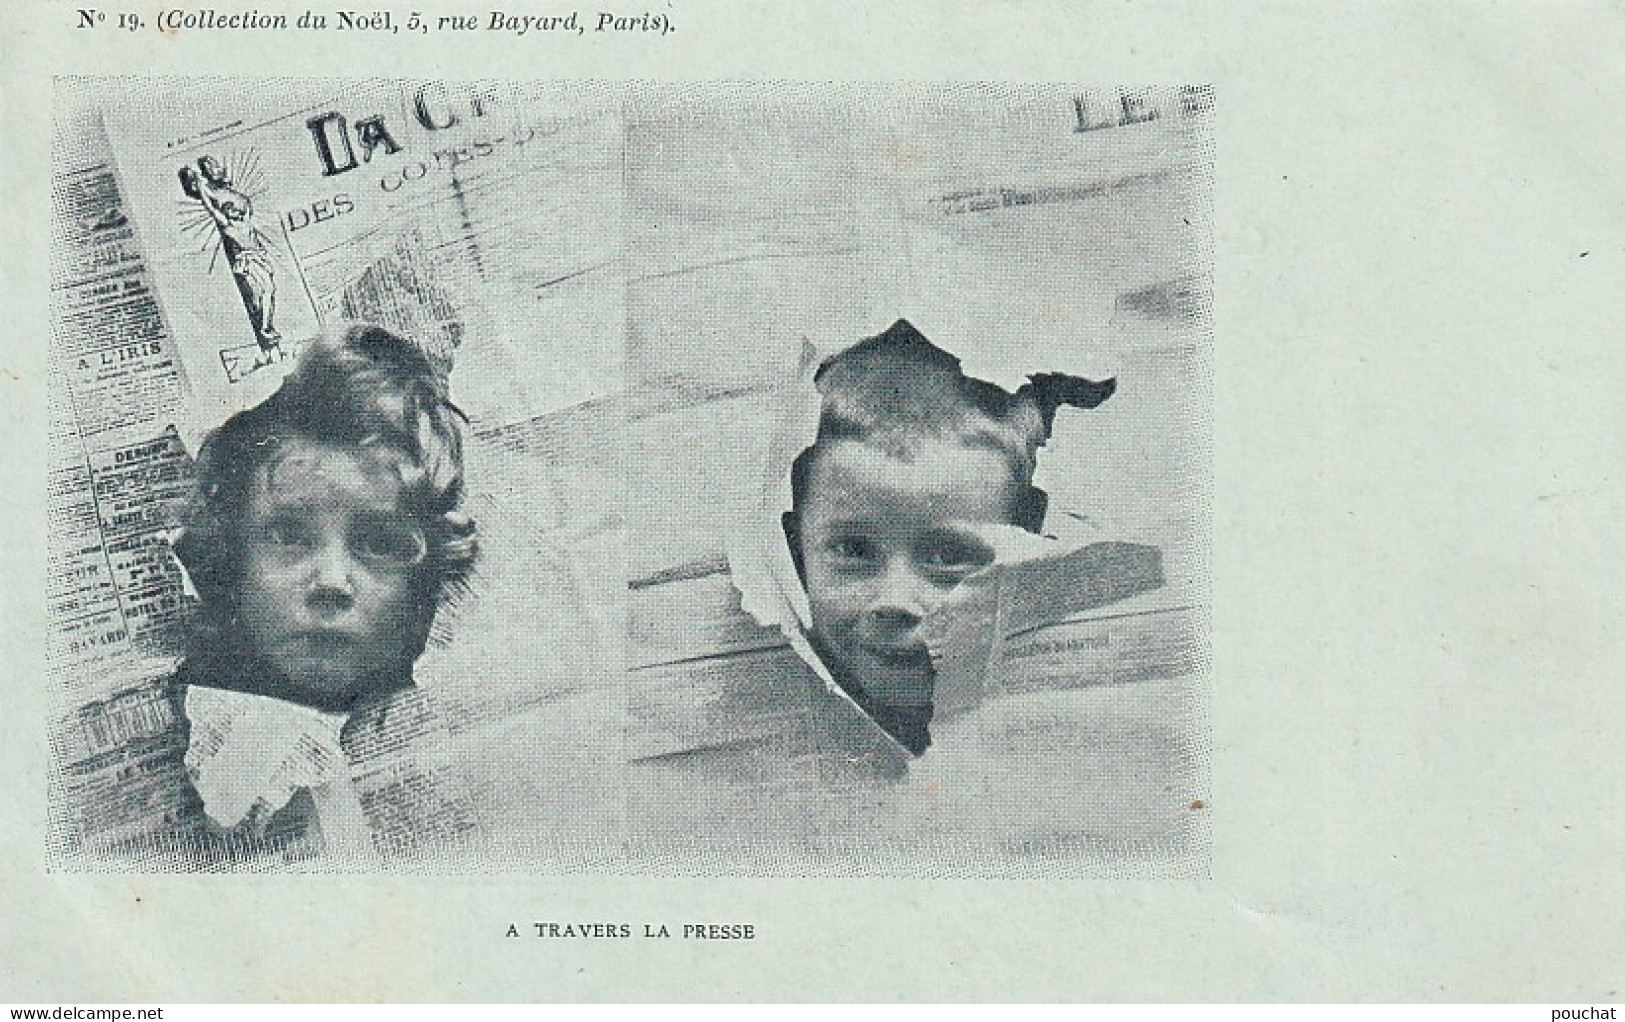 UR Nw40- " A TRAVERS LA PRESSE " - TETES D'ENFANTS DECHIRANT DES JOURNAUX - COLLECTION DU NOEL , PARIS - N°19 - Scènes & Paysages